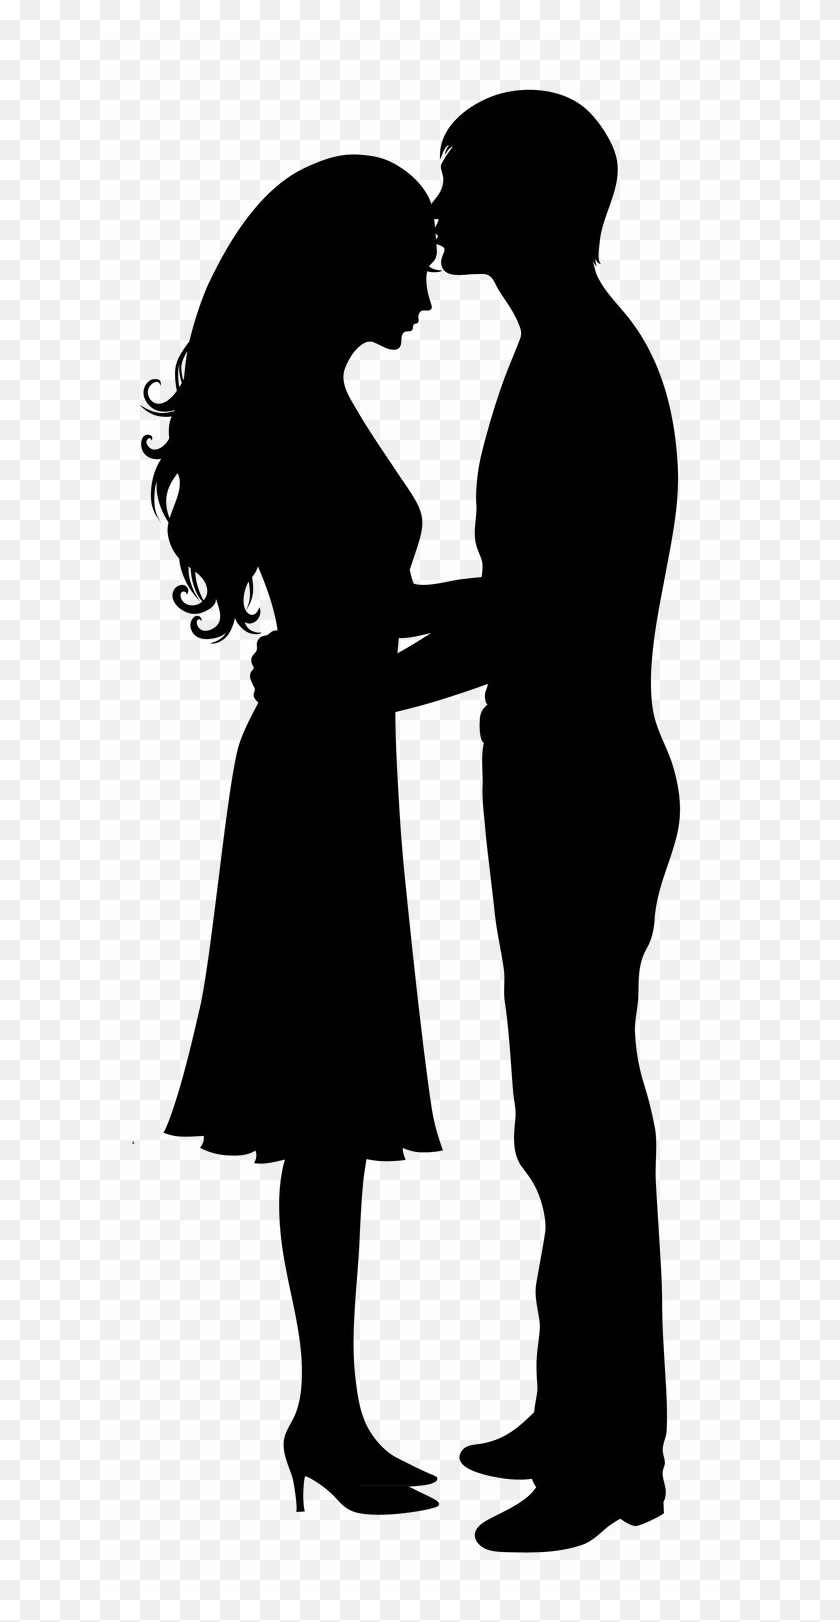 650x1562 Descargar La Imagen De Fondo De La Silueta De Romance Vector Clipart Silueta Romántica Hombre Y Mujer, Persona, Humano Hd Png